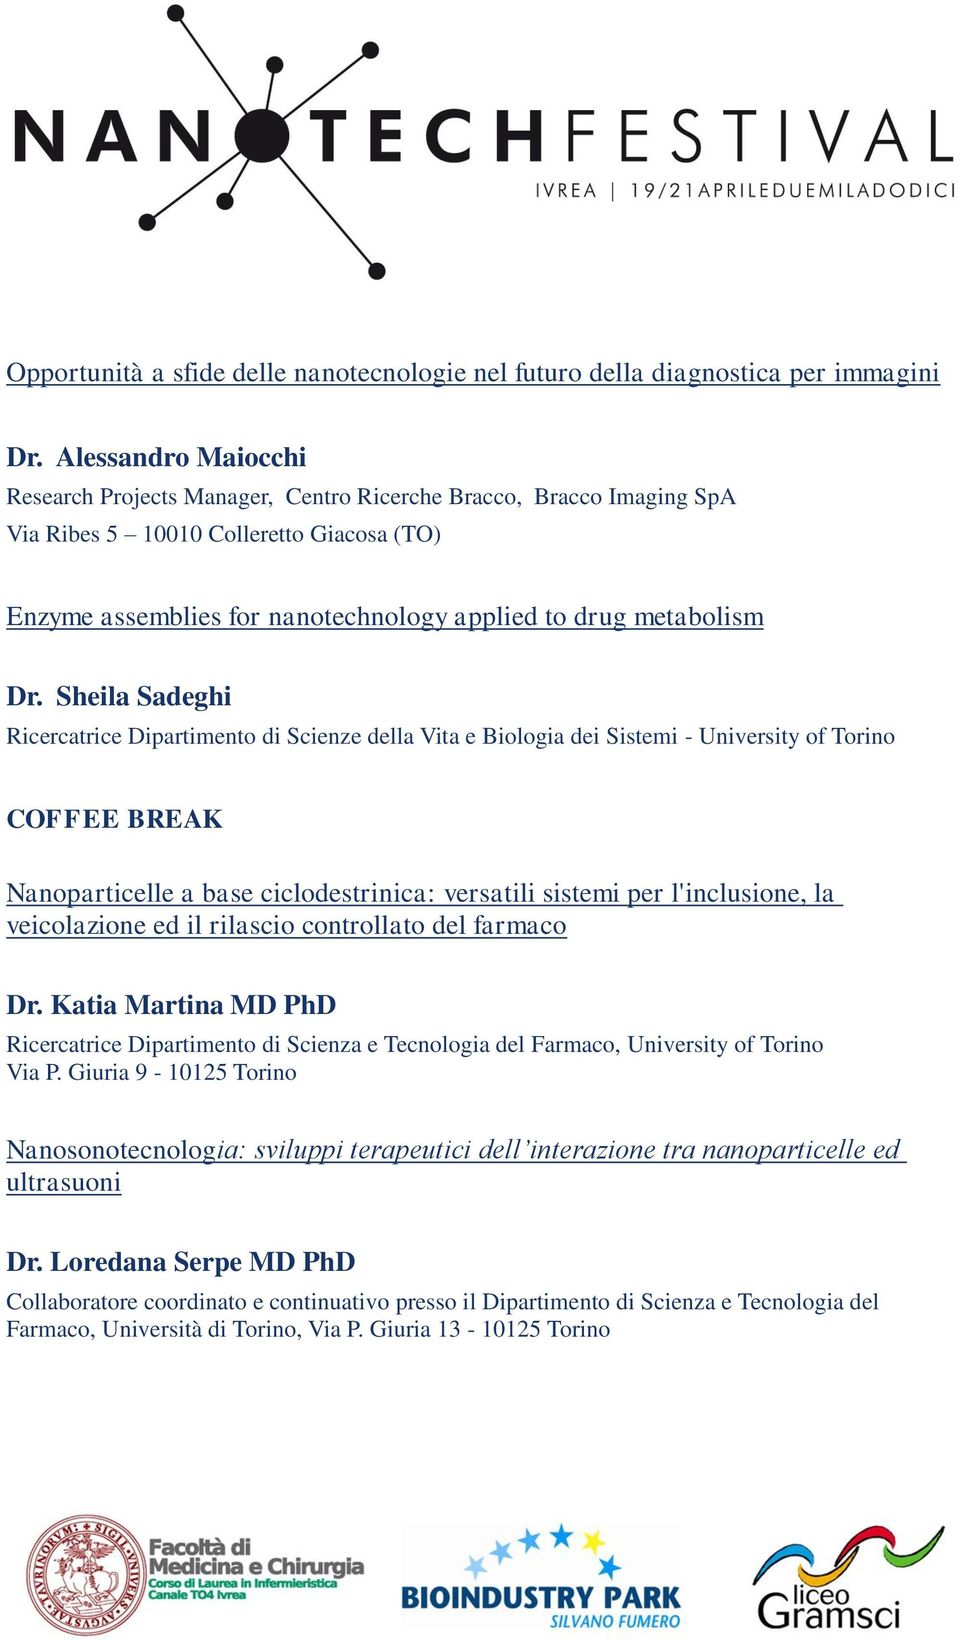 Sheila Sadeghi Ricercatrice Dipartimento di Scienze della Vita e Biologia dei Sistemi - University of Torino COFFEE BREAK Nanoparticelle a base ciclodestrinica: versatili sistemi per l'inclusione, la